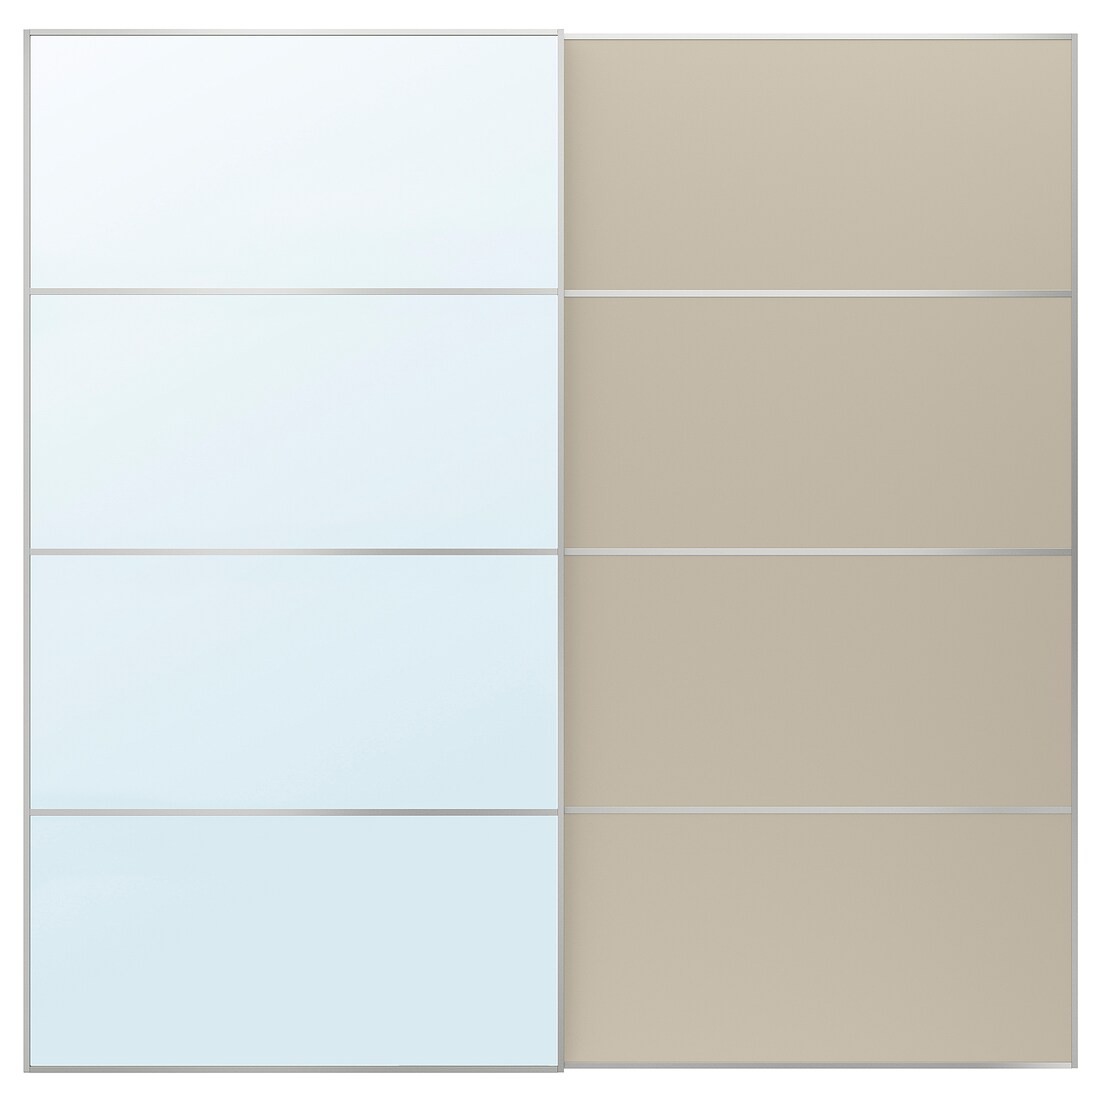 IKEA AULI / MEHAMN пара раздвижных дверей, алюминиевое зеркало / 2 стороны серо-бежевый, 200x201 см 49560575 495.605.75